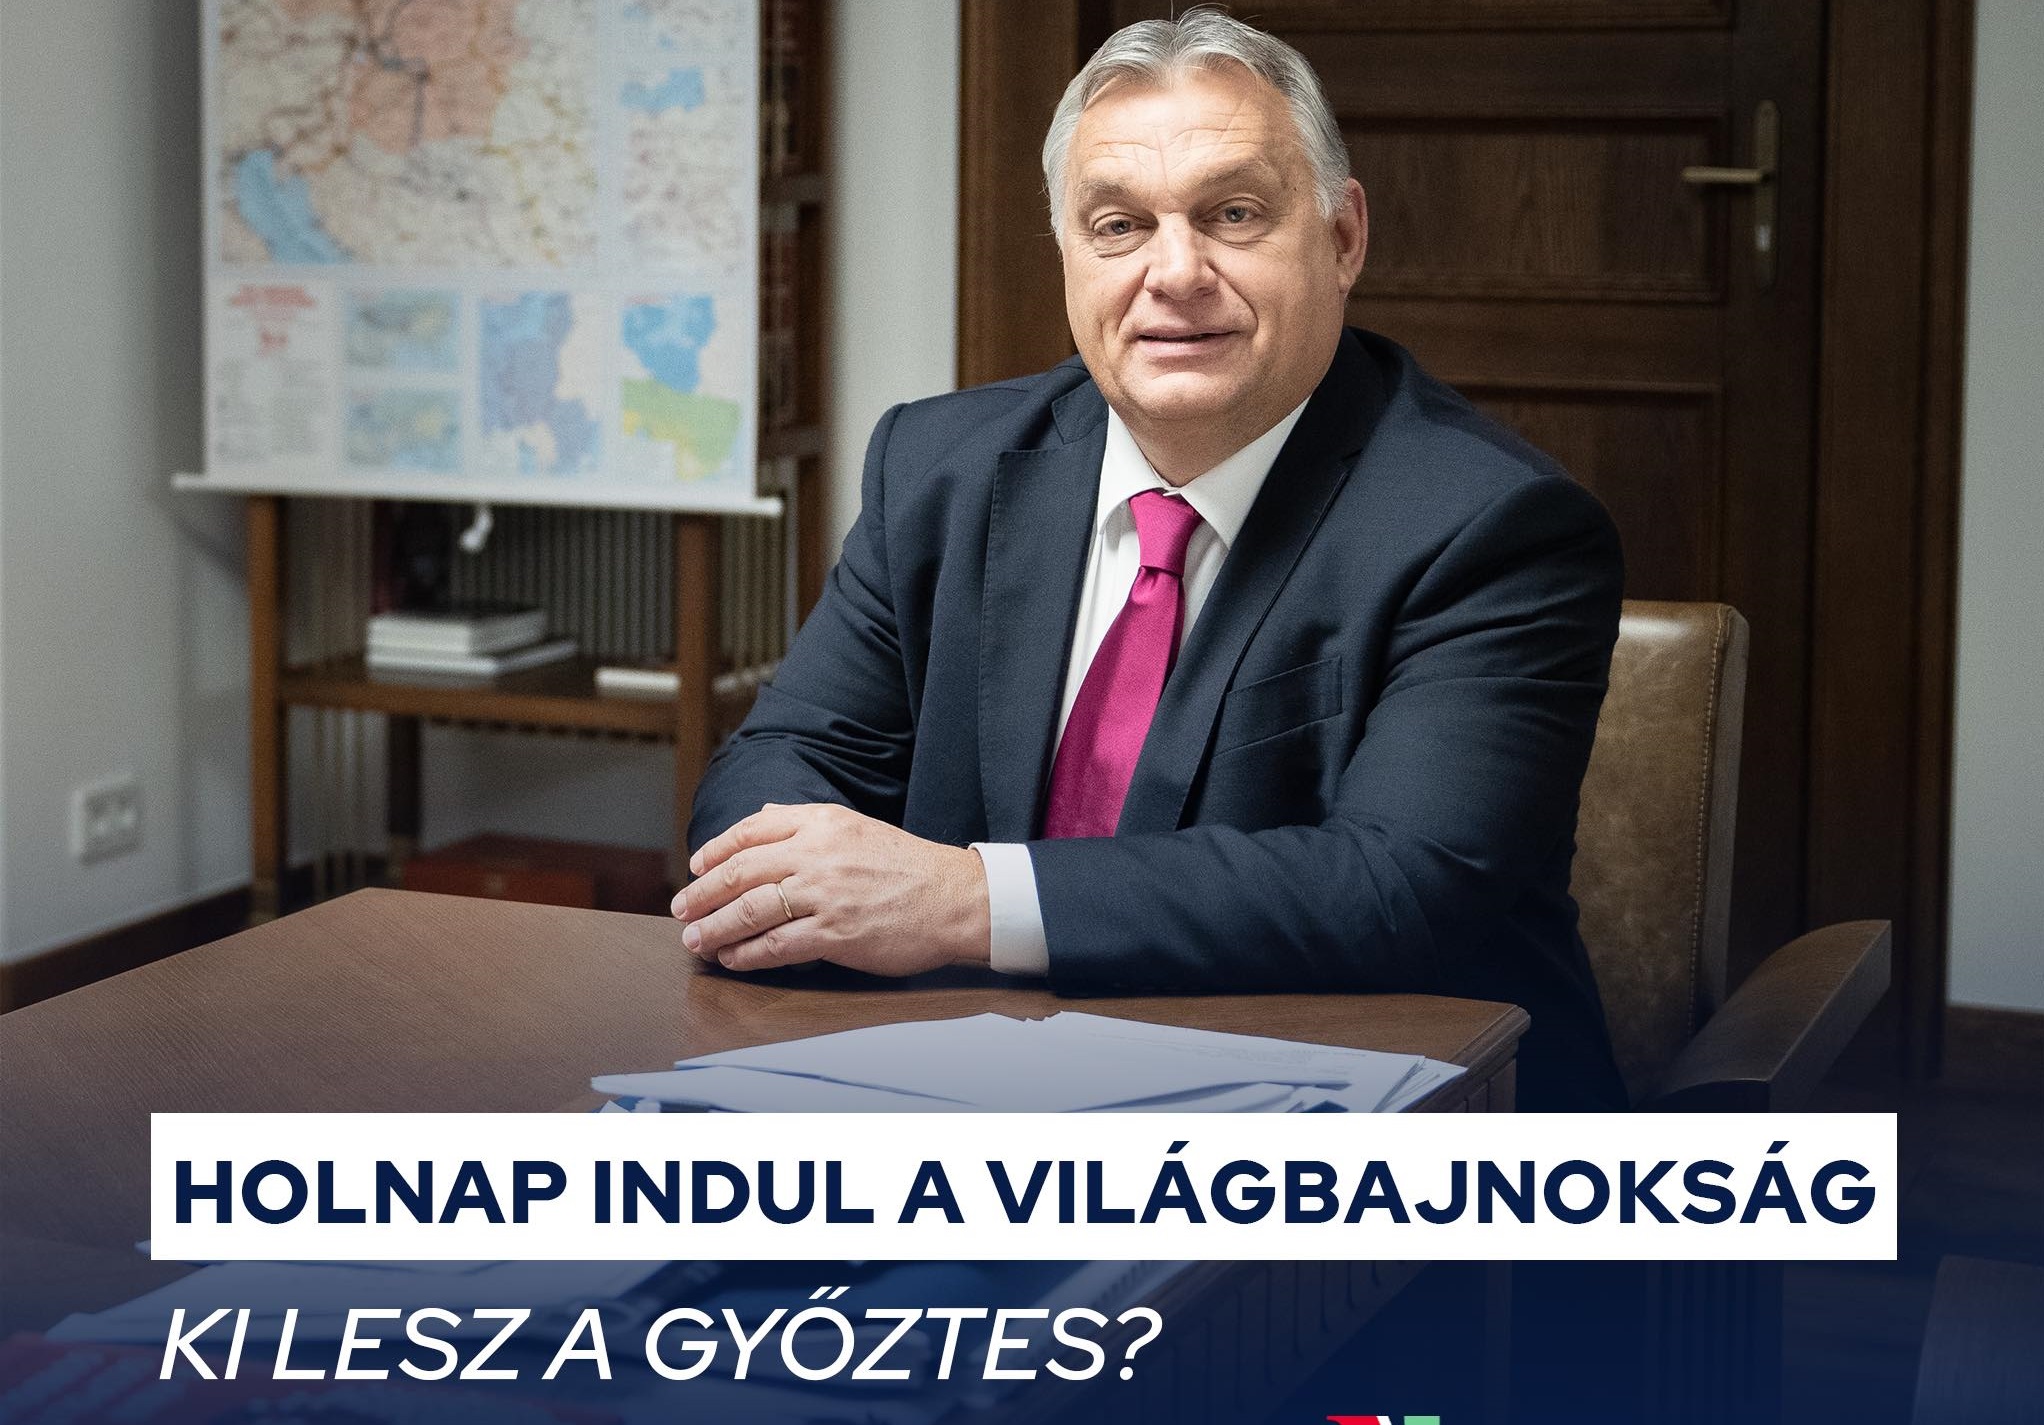 Orbán Viktor merészet tippelt